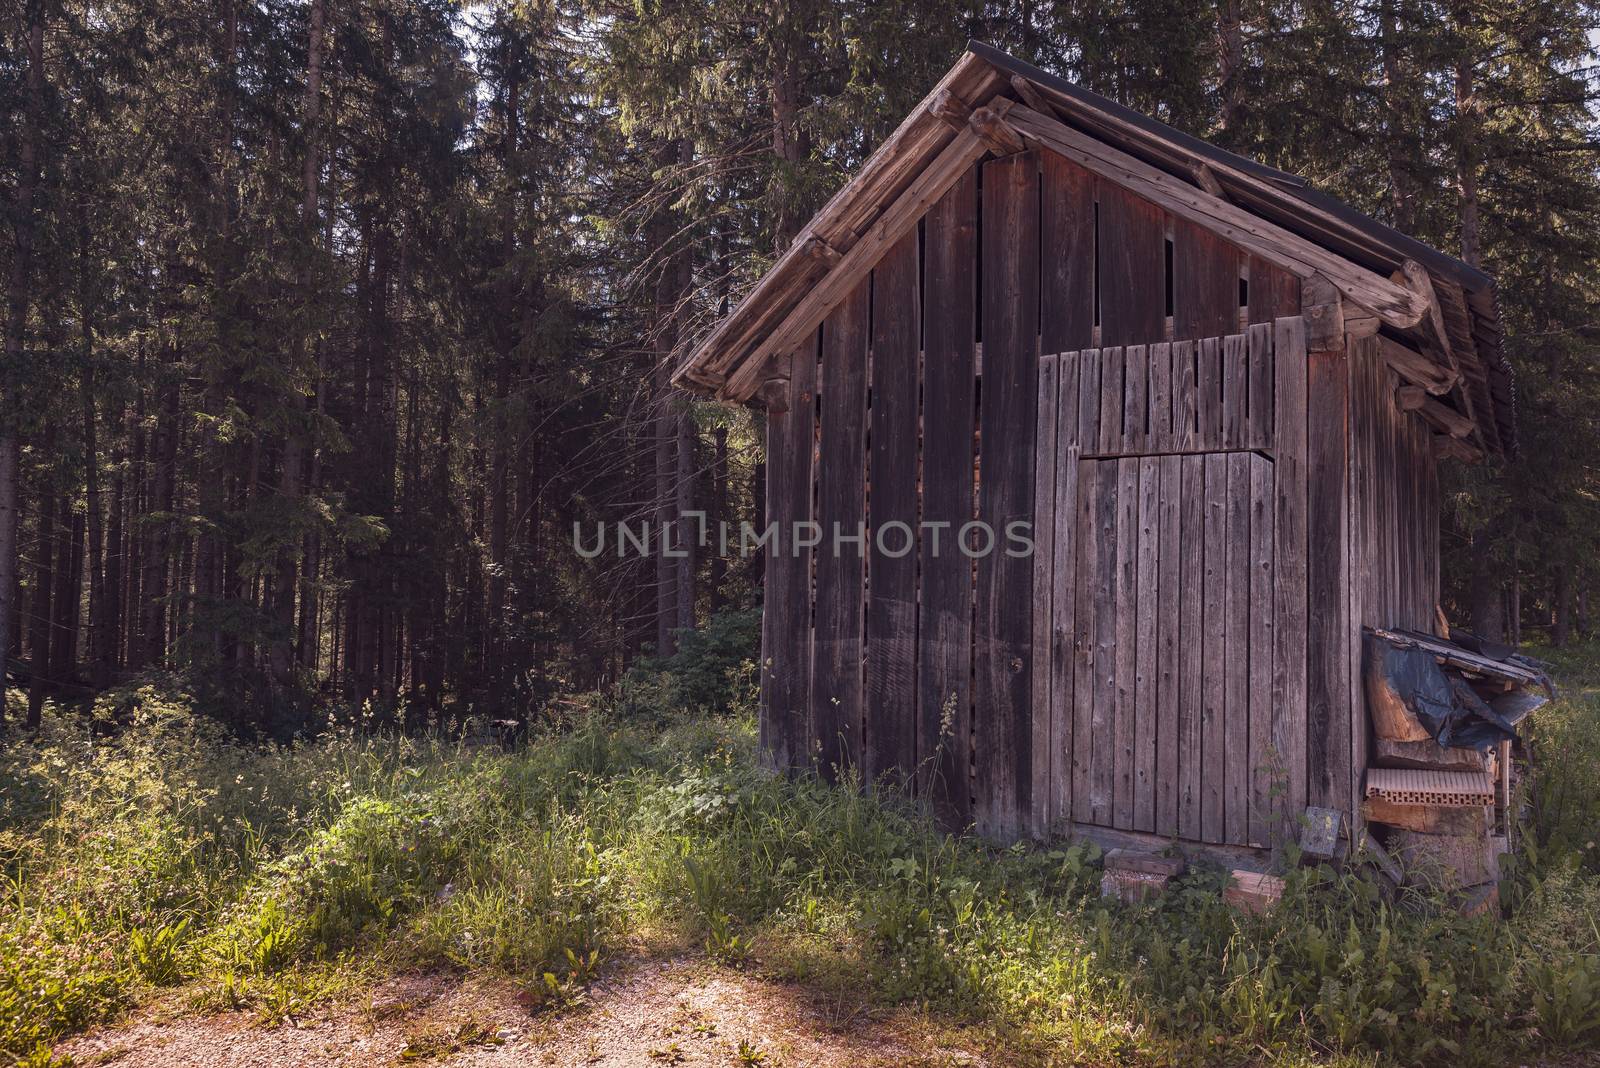 Wooden hut hidden in the forest by brambillasimone